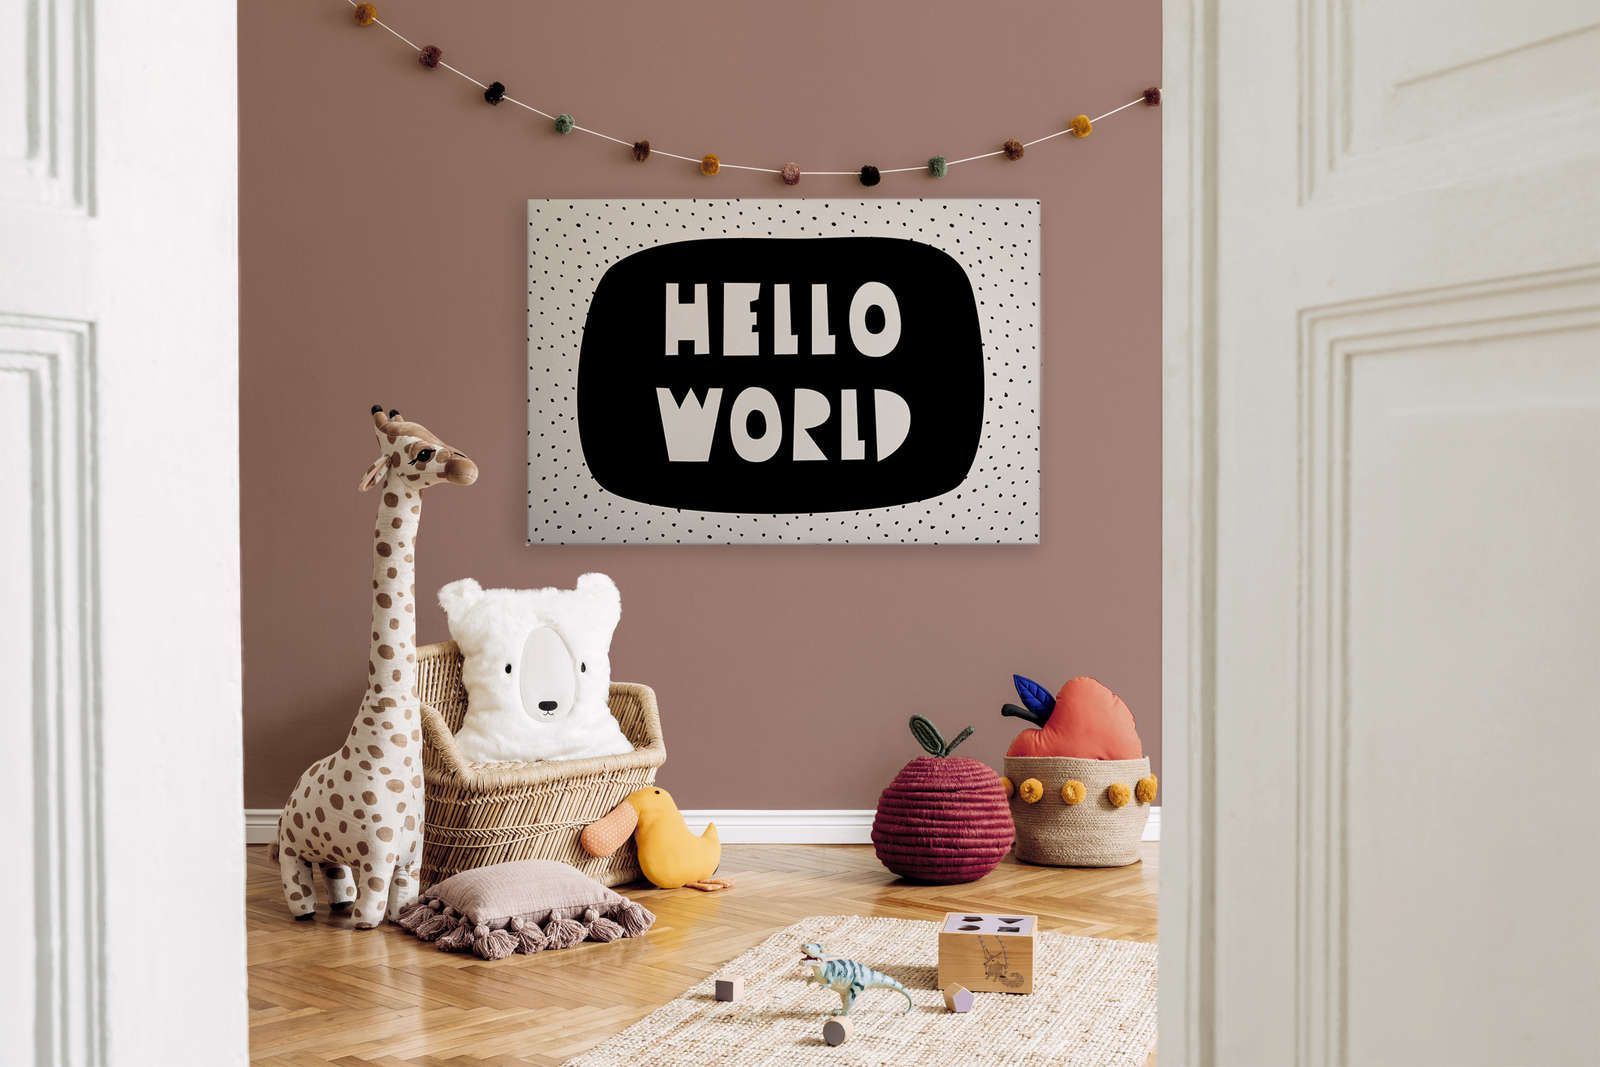             Leinwand fürs Kinderzimmer mit Schriftzug "Hello World" – 120 cm x 80 cm
        